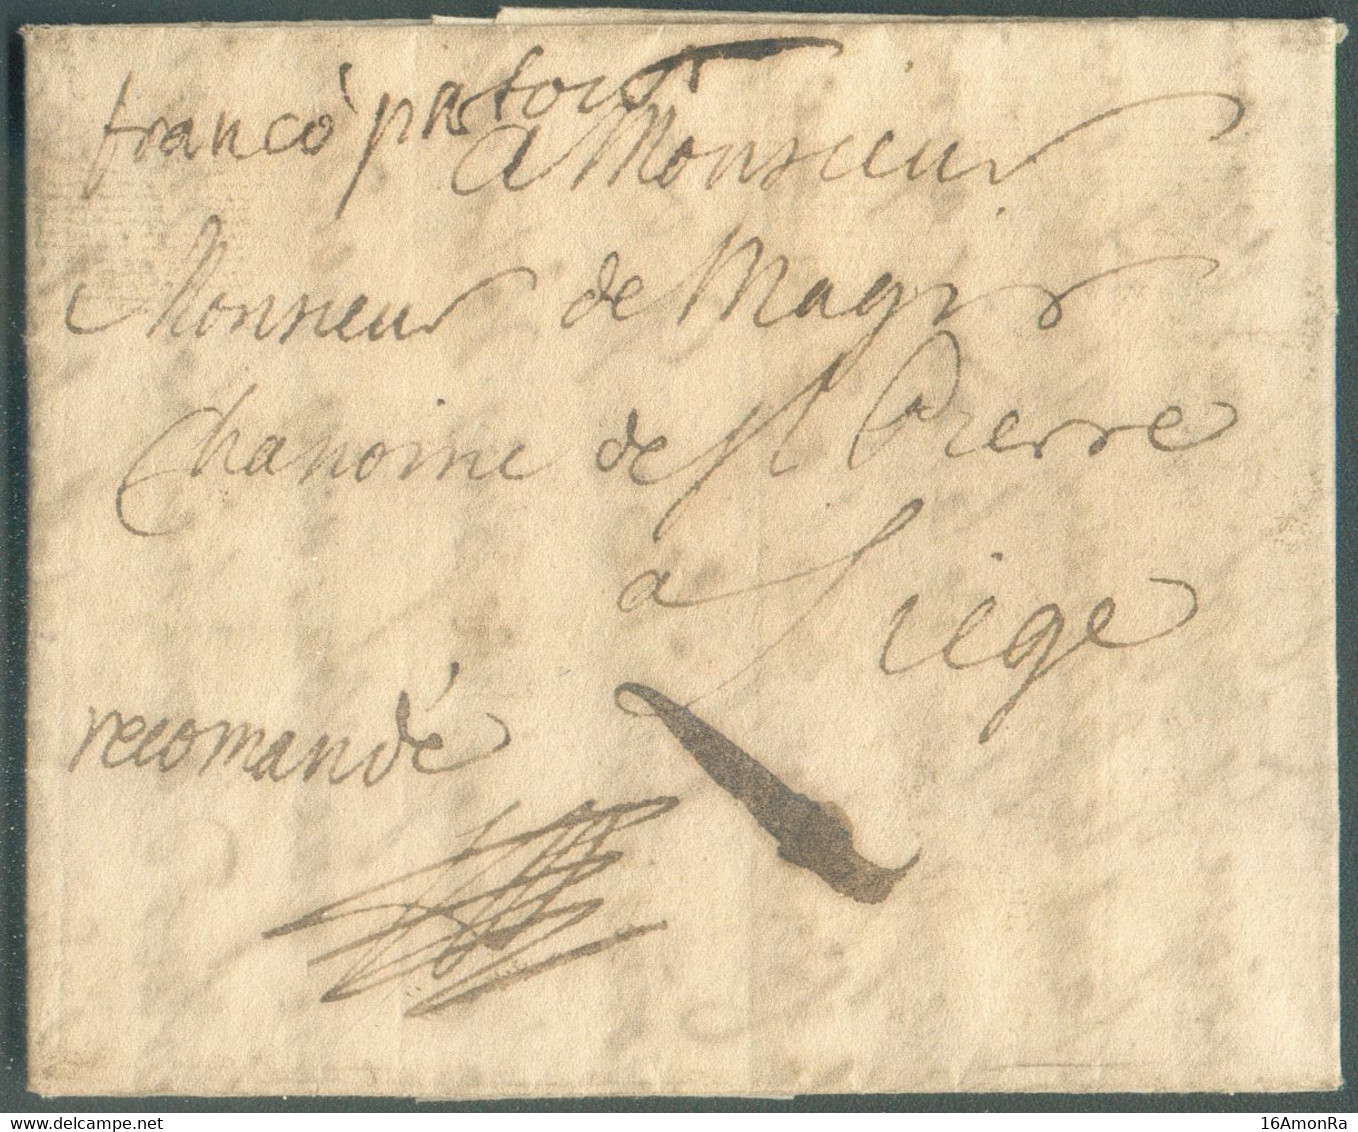 LAC De RATISBONNE (REGENSBURG en Bavière) Le 12 Janvier 1752 + Man. 'Recommandé' (RR à Cette époque) Et franco Fcfort ve - 1714-1794 (Paises Bajos Austriacos)